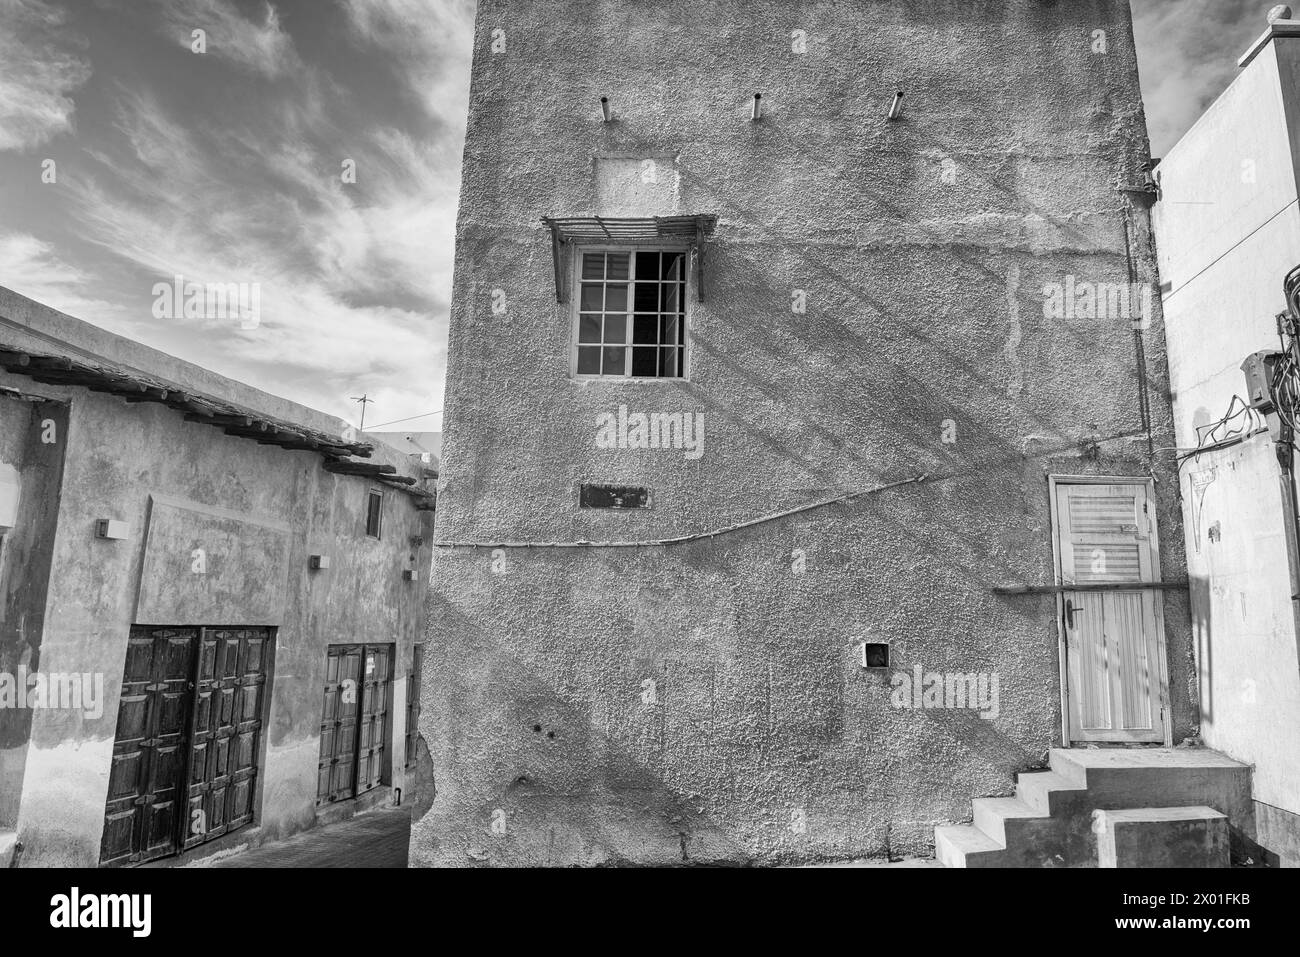 Image en noir et blanc de vieux bâtiments dans une vieille zone urbaine d'une ville du moyen-Orient avec des portes en bois arborant des magasins fermés. Banque D'Images